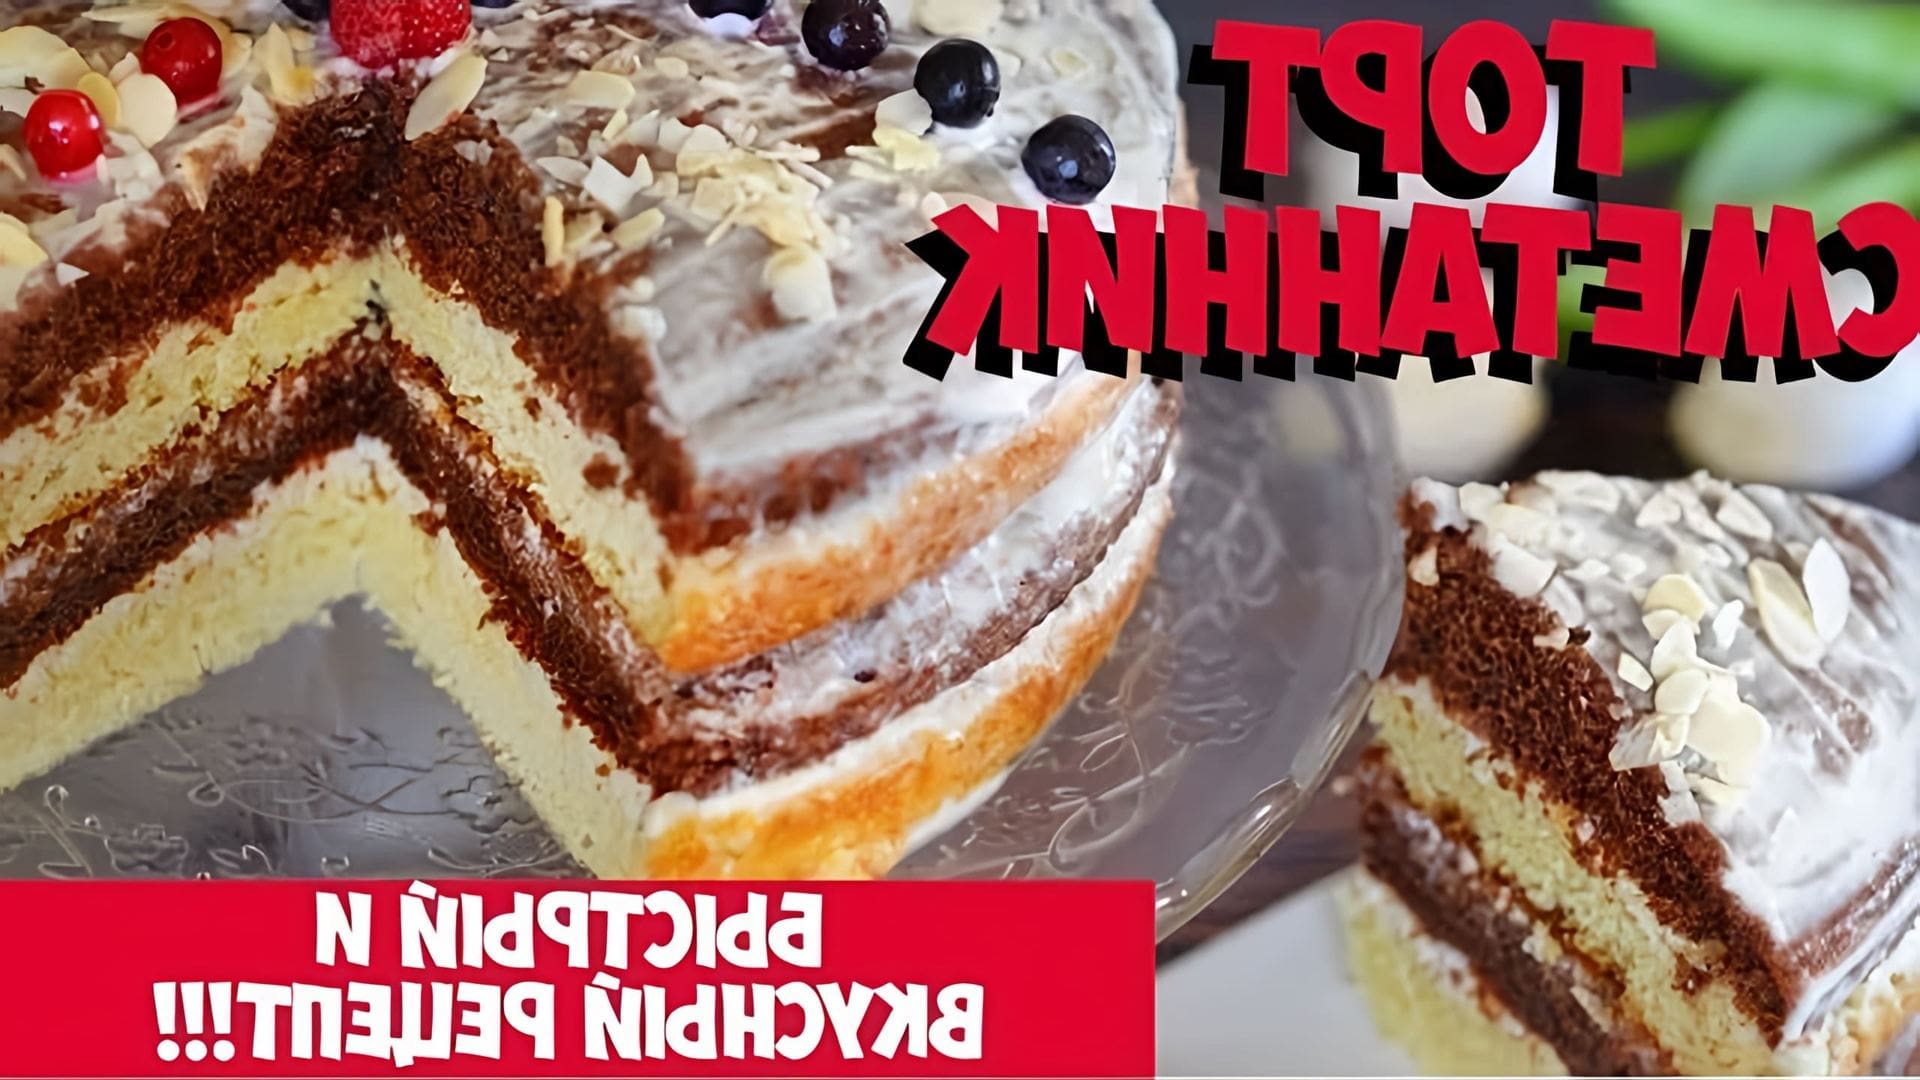 В этом видео-ролике будет представлен рецепт приготовления торта "СМЕТАННИК", который является очень вкусным и популярным десертом